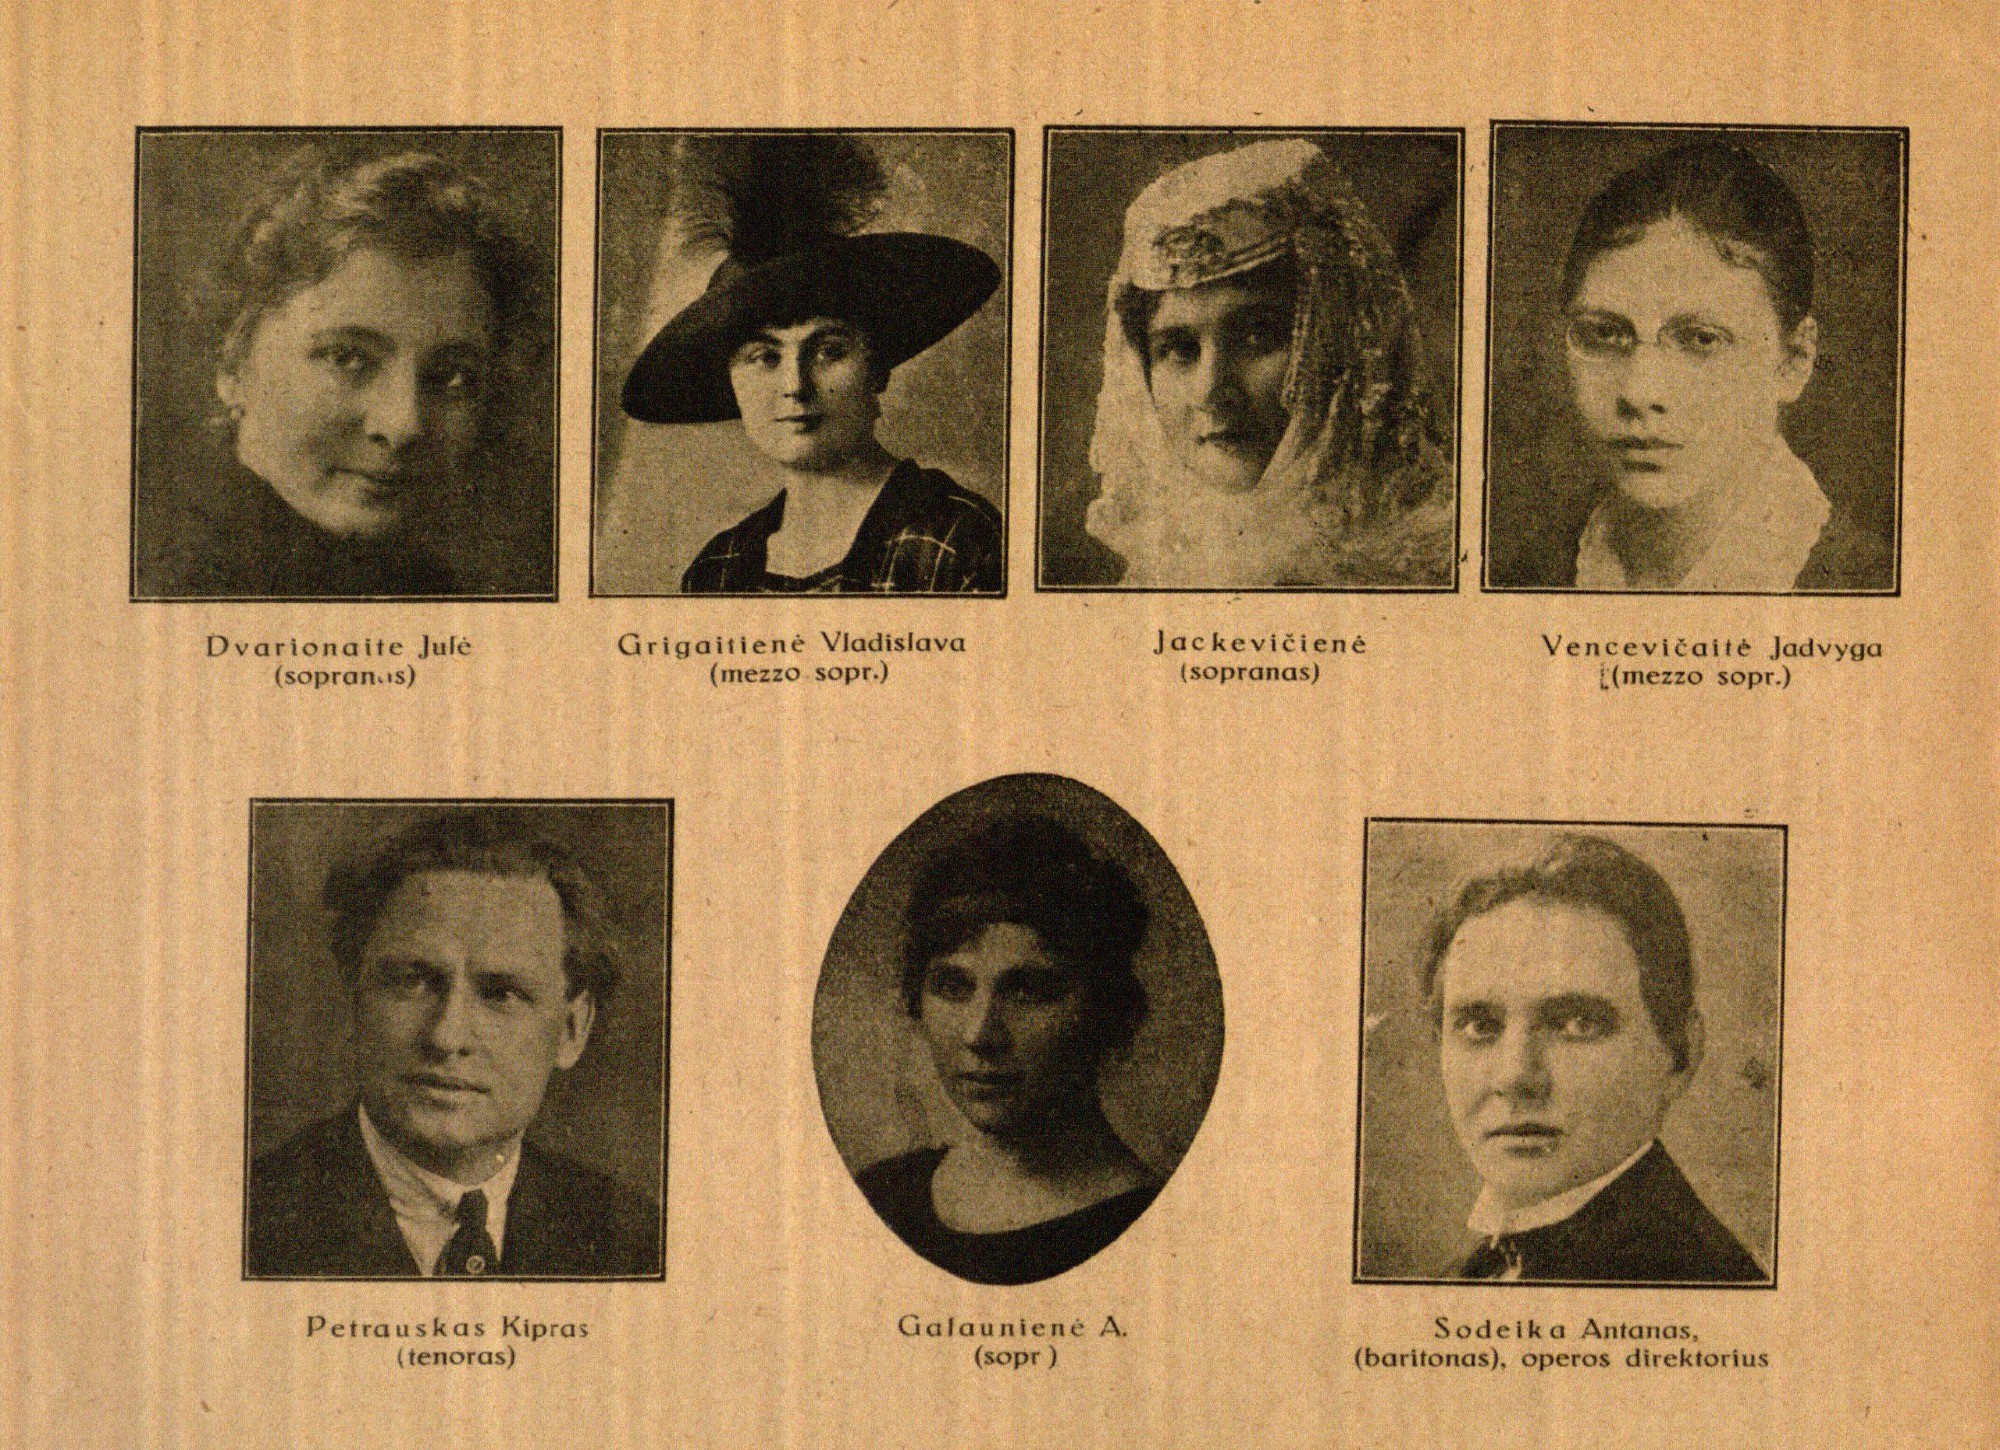 Lietuvos Opera: Dvarionaitė Julė (sopranas), Grigaitienė Vladislava (mezzo sopr.), M. Jackevičienė (sopranas), Vencevičaitė Jadvyga (mezzo sopr.), Petrauskas Kipras (tenoras), Galaunienė A. (sopr.), Sodeika Antanas (baritonas), operos direktorius Oleka Petras (barit.) // Atspindžiai. – 1922, Nr. 11, p. 14.